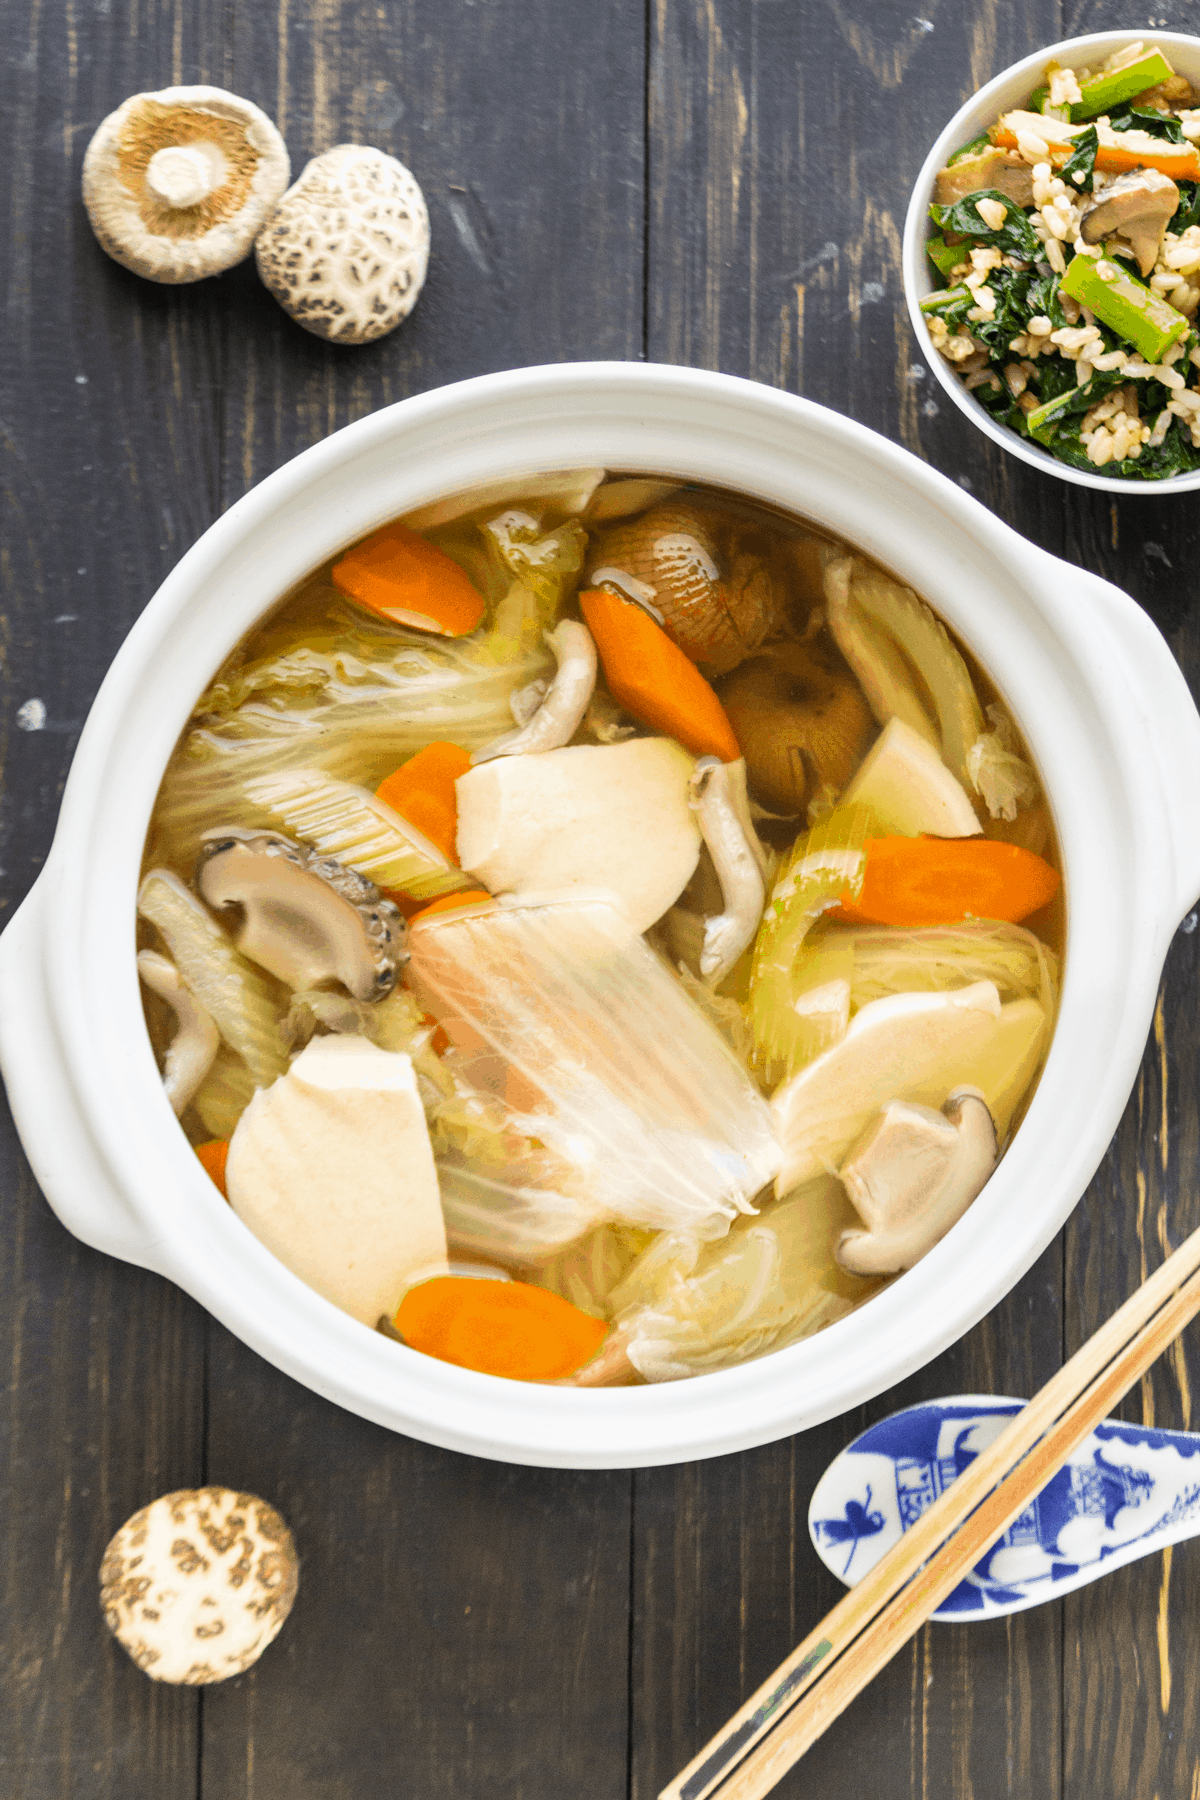 La recette de Claude : soupe de champignons chinois - Toutelaculture